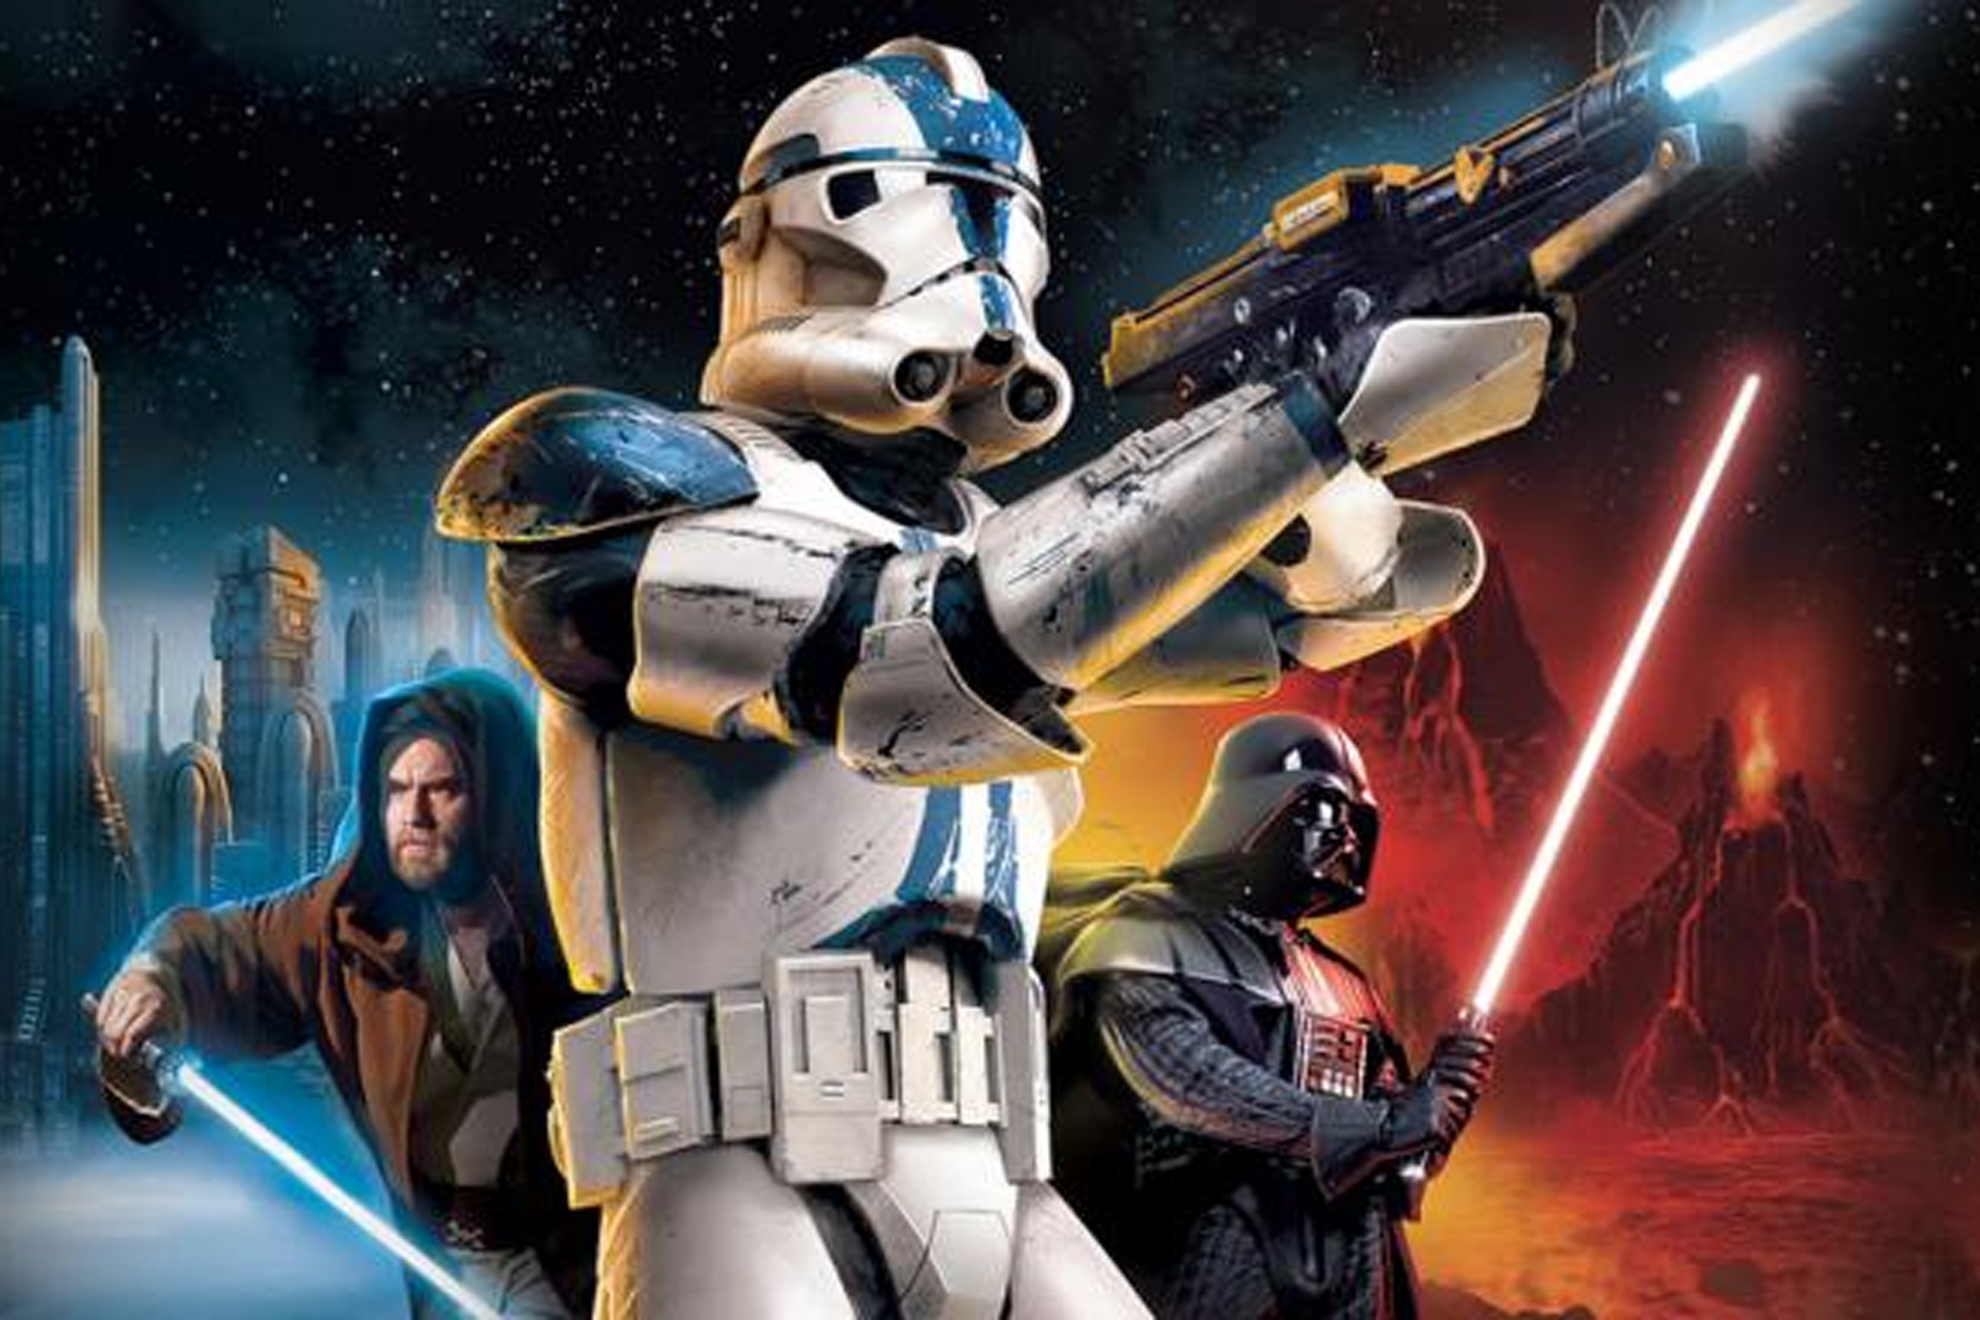 Volver al mejor videojuego de Star Wars con Battlefront es revivir el conflicto entre nostalgiayrealidad